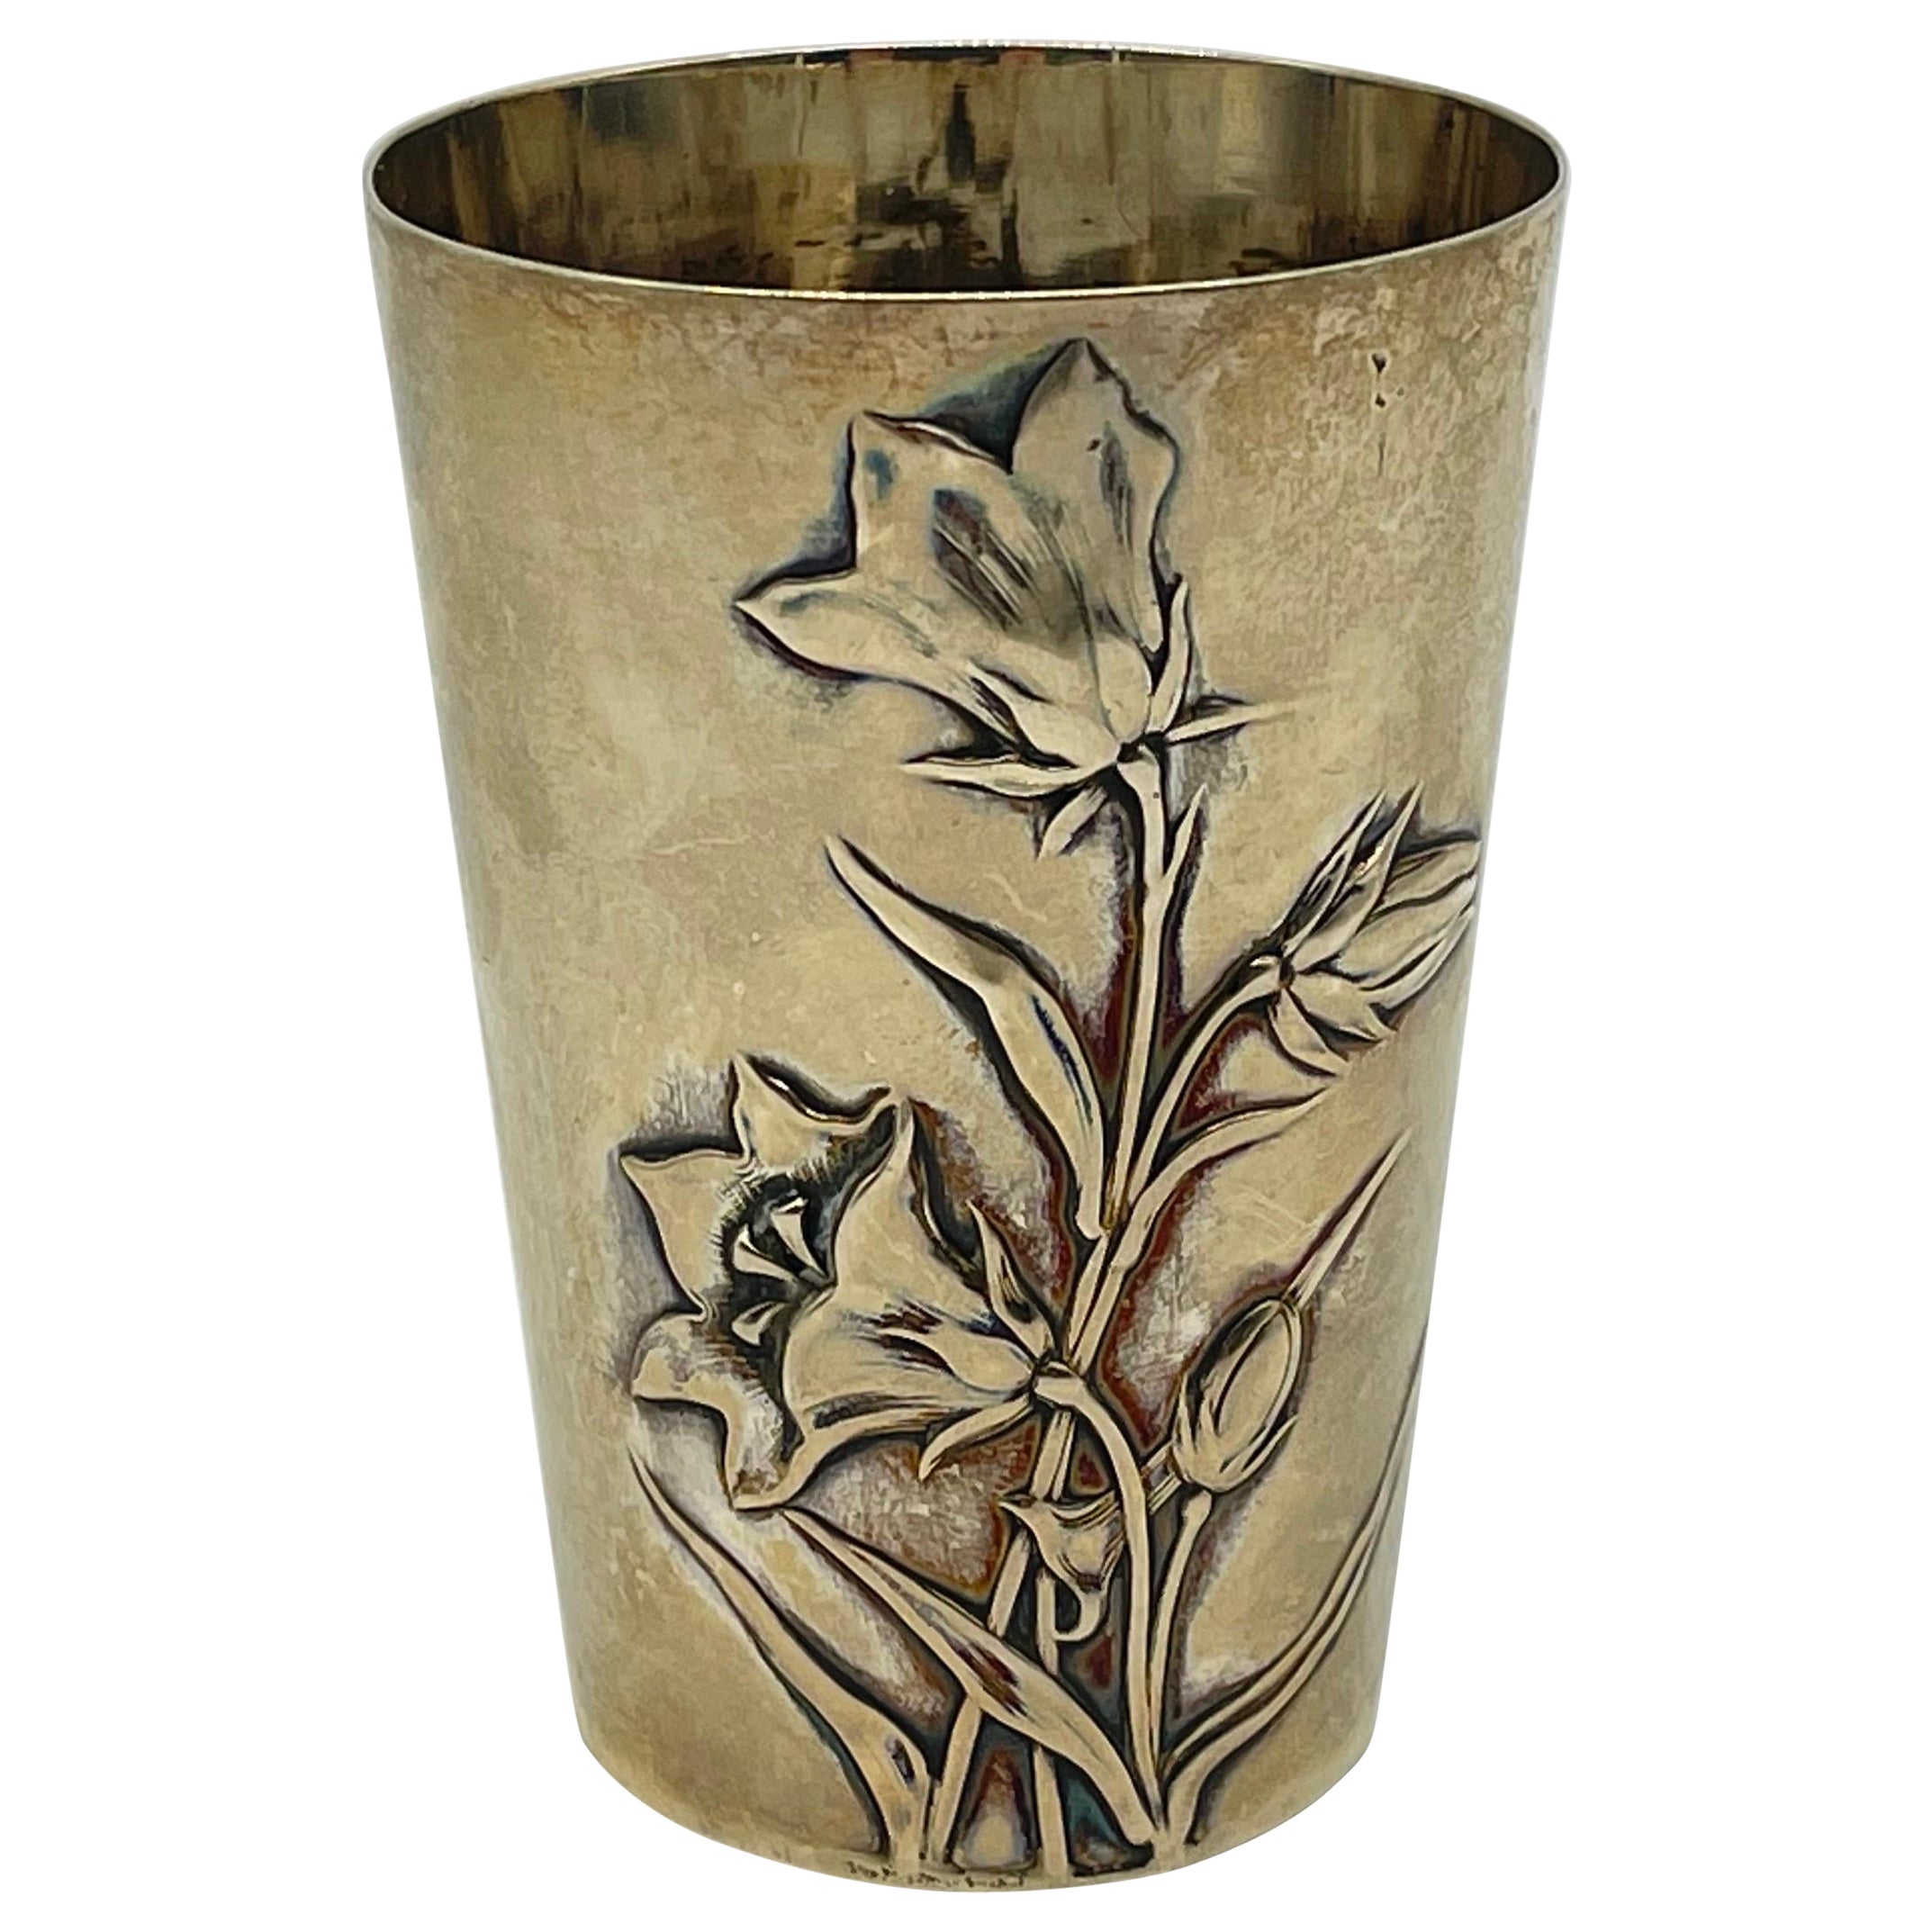 Antique Mug Art Nouveau Flowers 800 Silver - gilded / Cup Gebrüder Kühn Germany